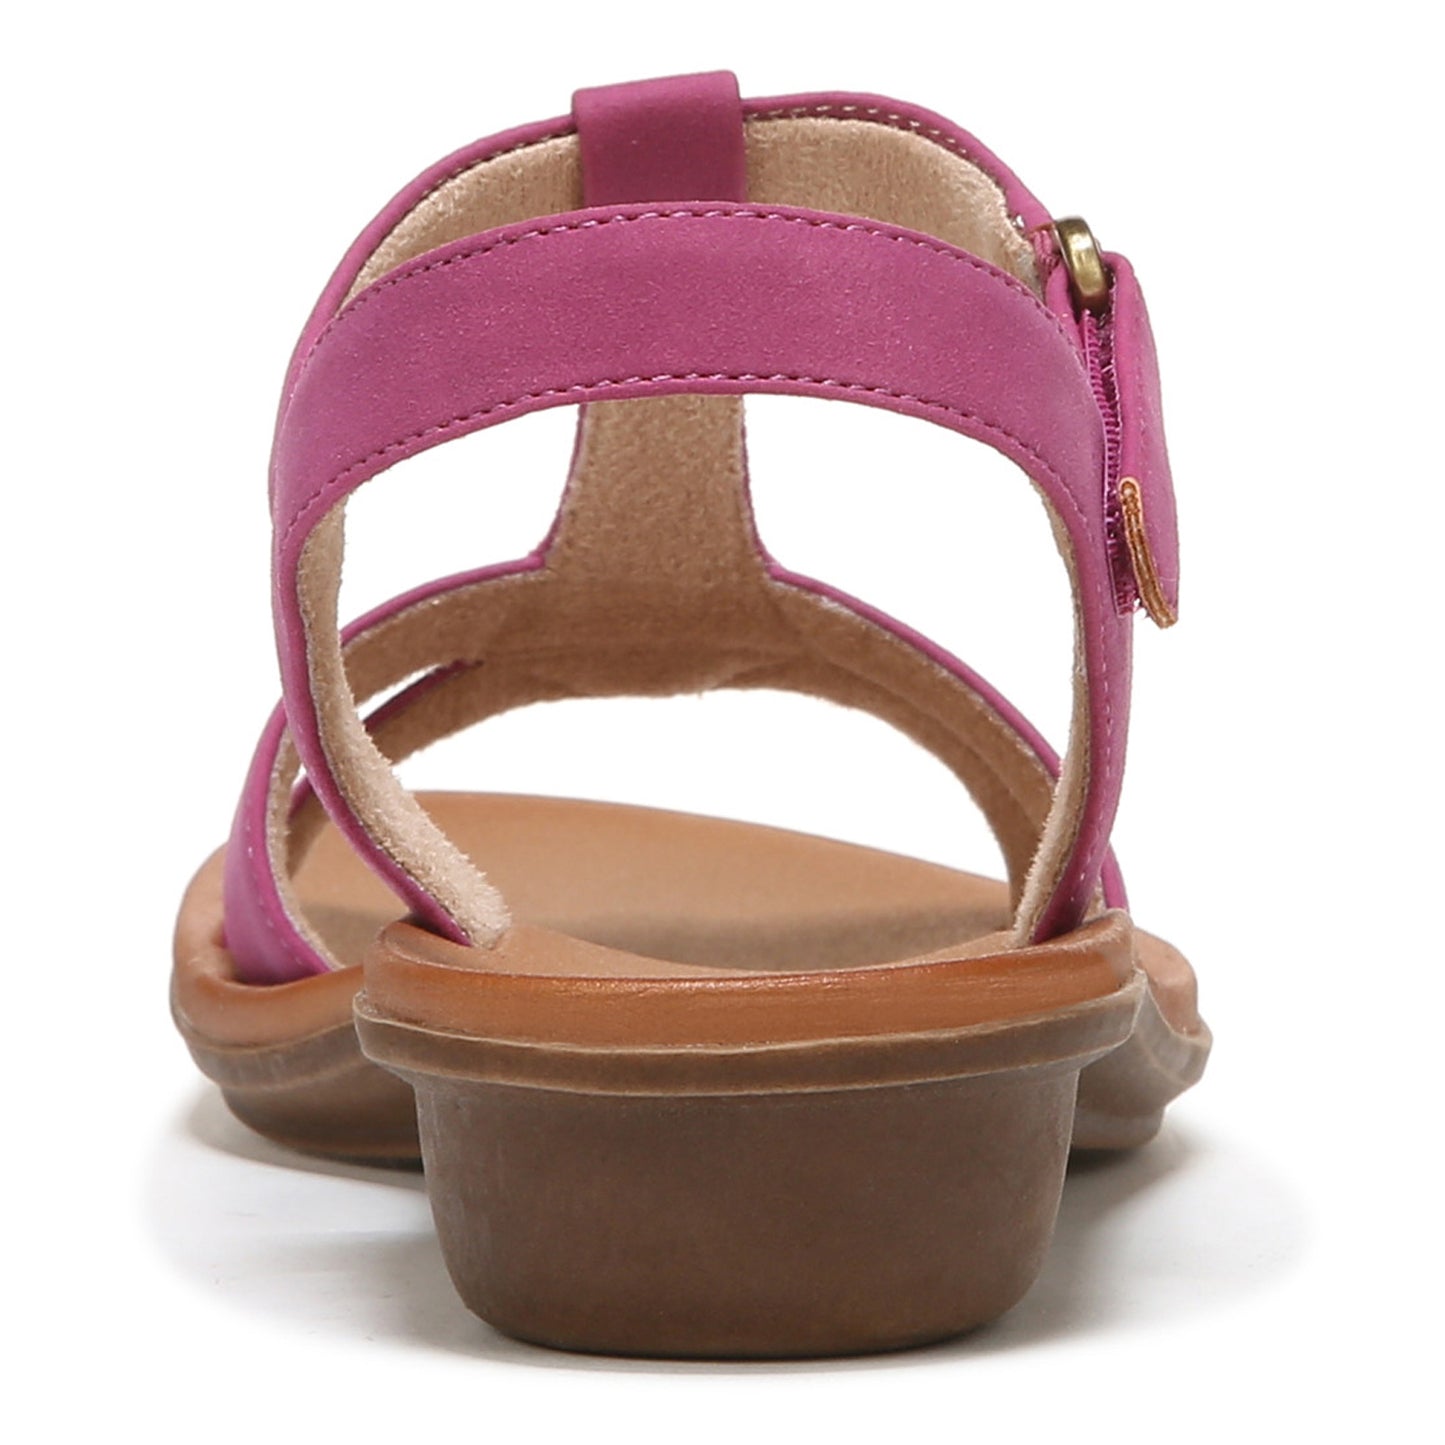 Peltz Shoes  Women's SOUL Naturalizer Summer Sandal ORCHID I0764M1500